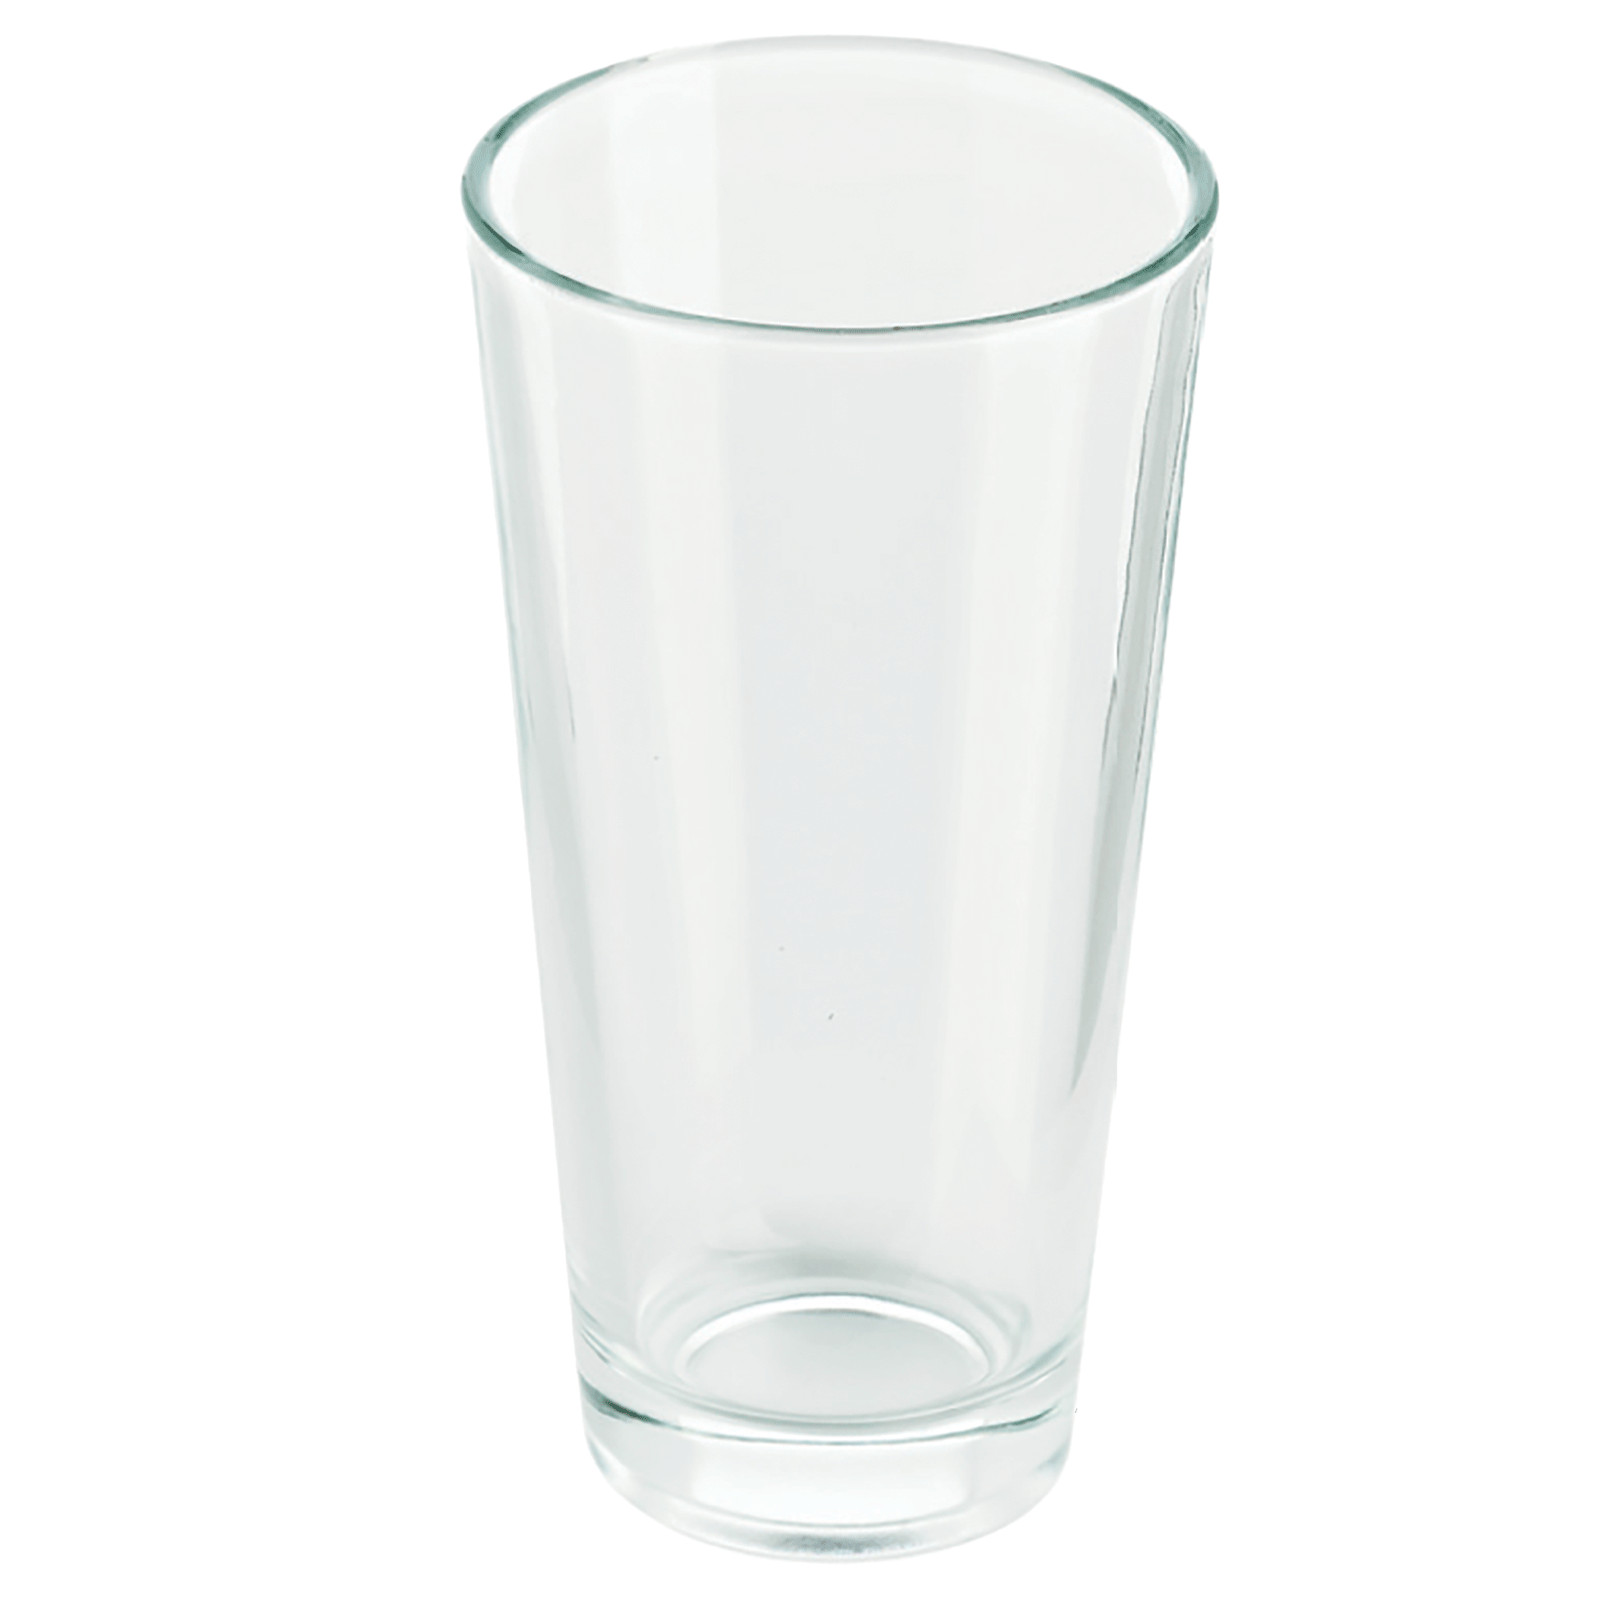 Bicchiere di ricambio per Boston shaker - Colore trasparente - Materiale Vetro - Capacità -ml- 500 - 